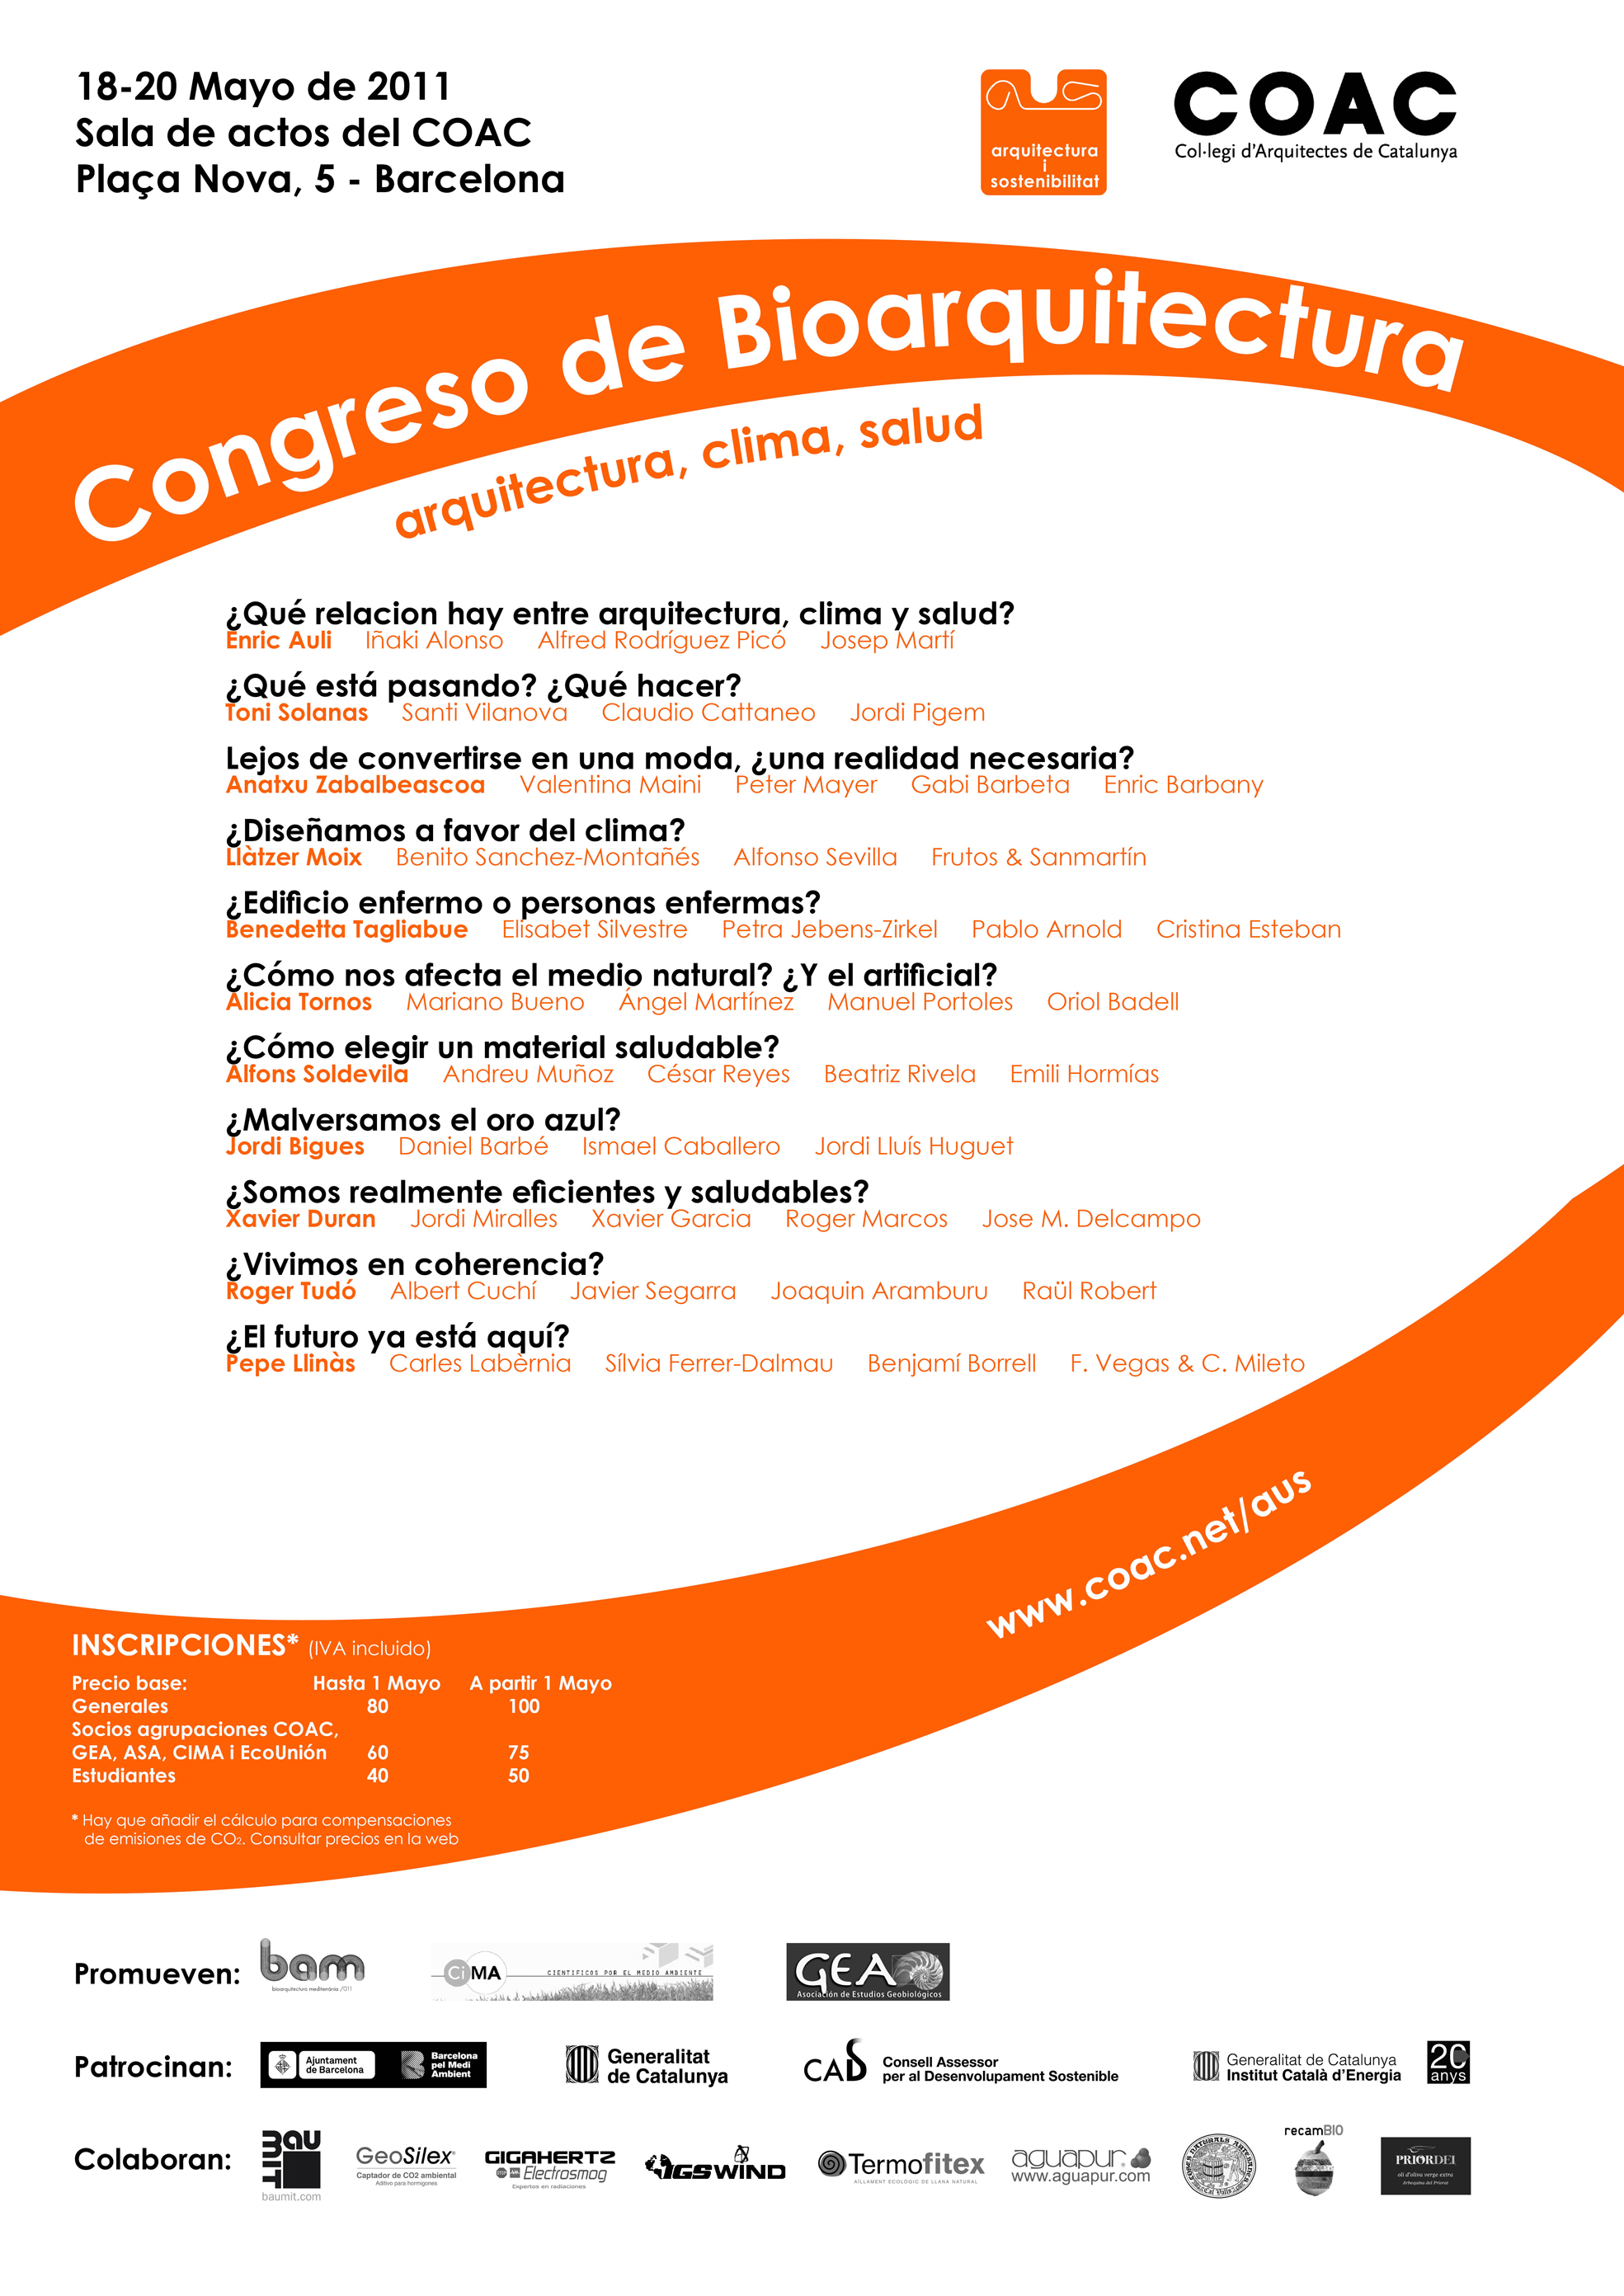 Poster de difusión del Congreso Bioarquitectura 2011